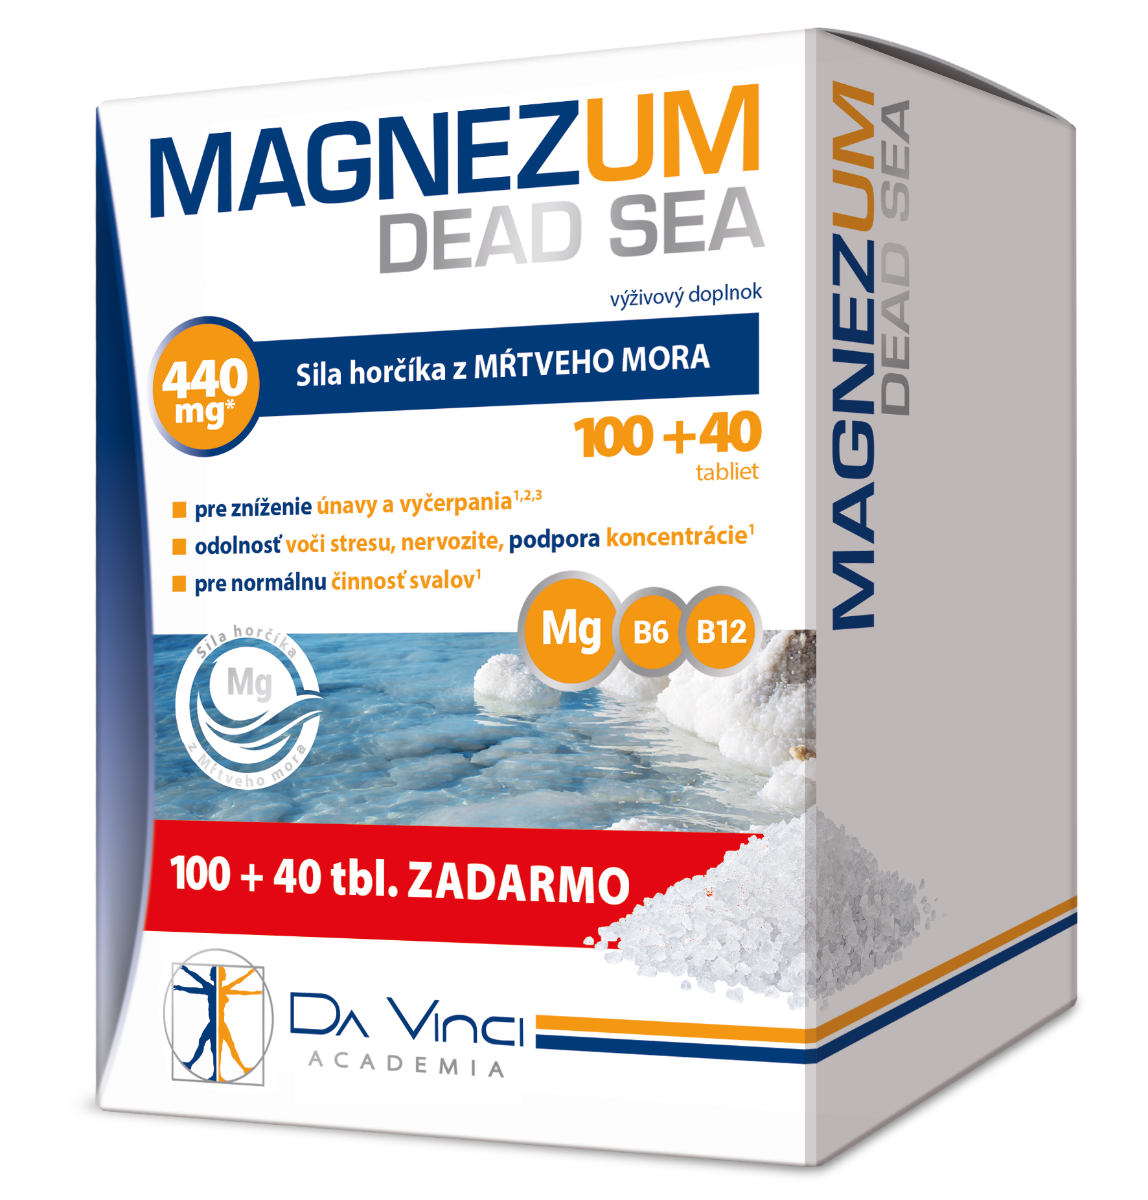 Magnezum Dead Sea - DA VINCI 10040 tbl. zadarmo